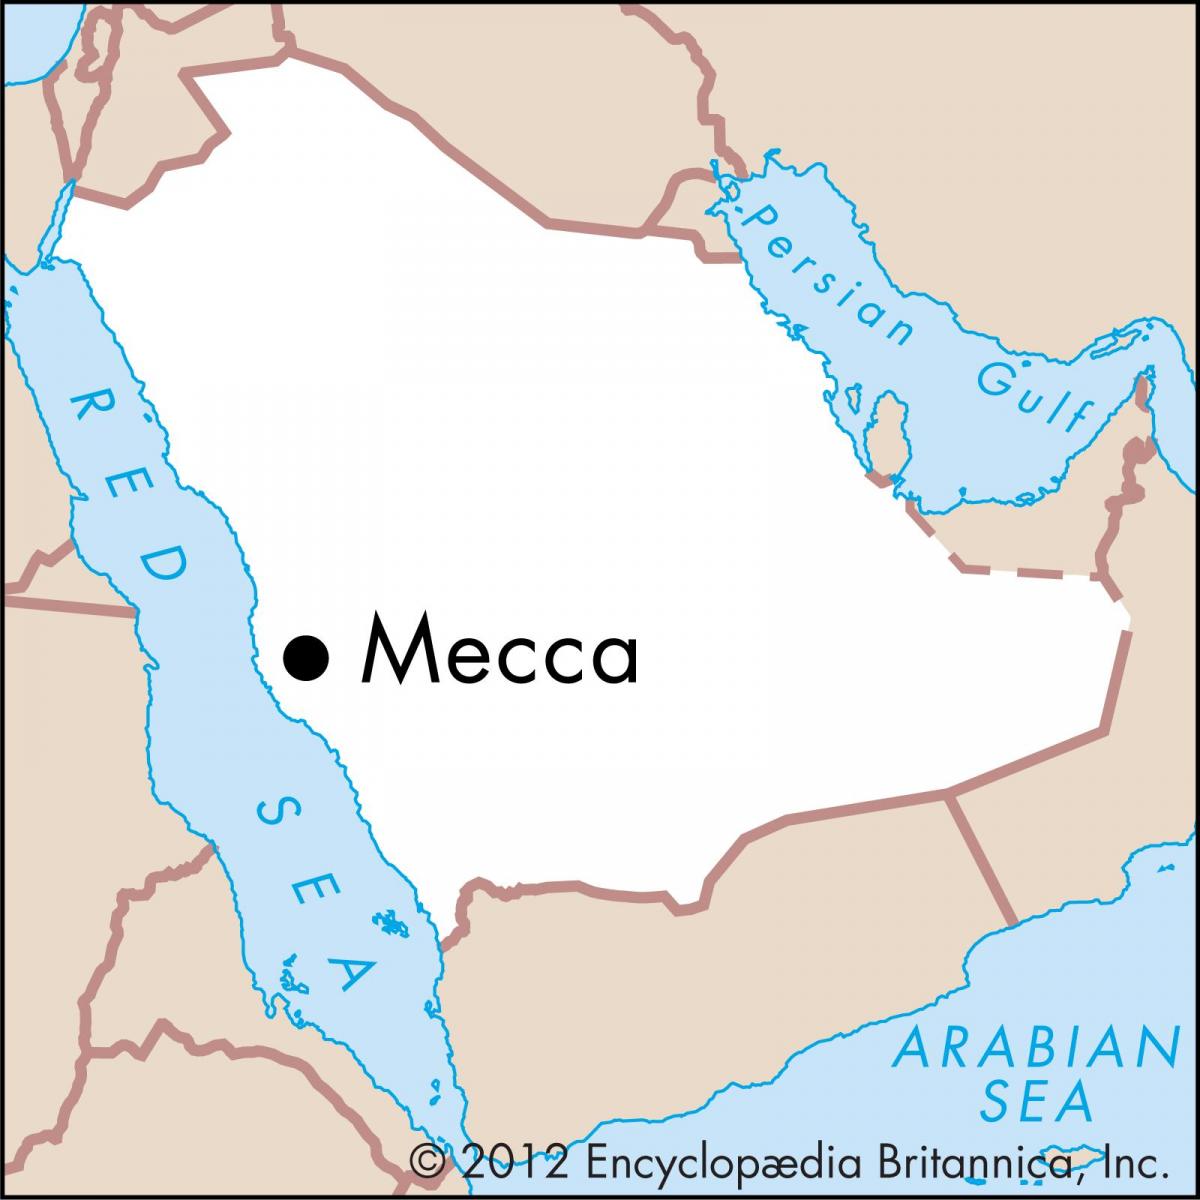 térkép, ha shahrah e hidzsra Mekkája 